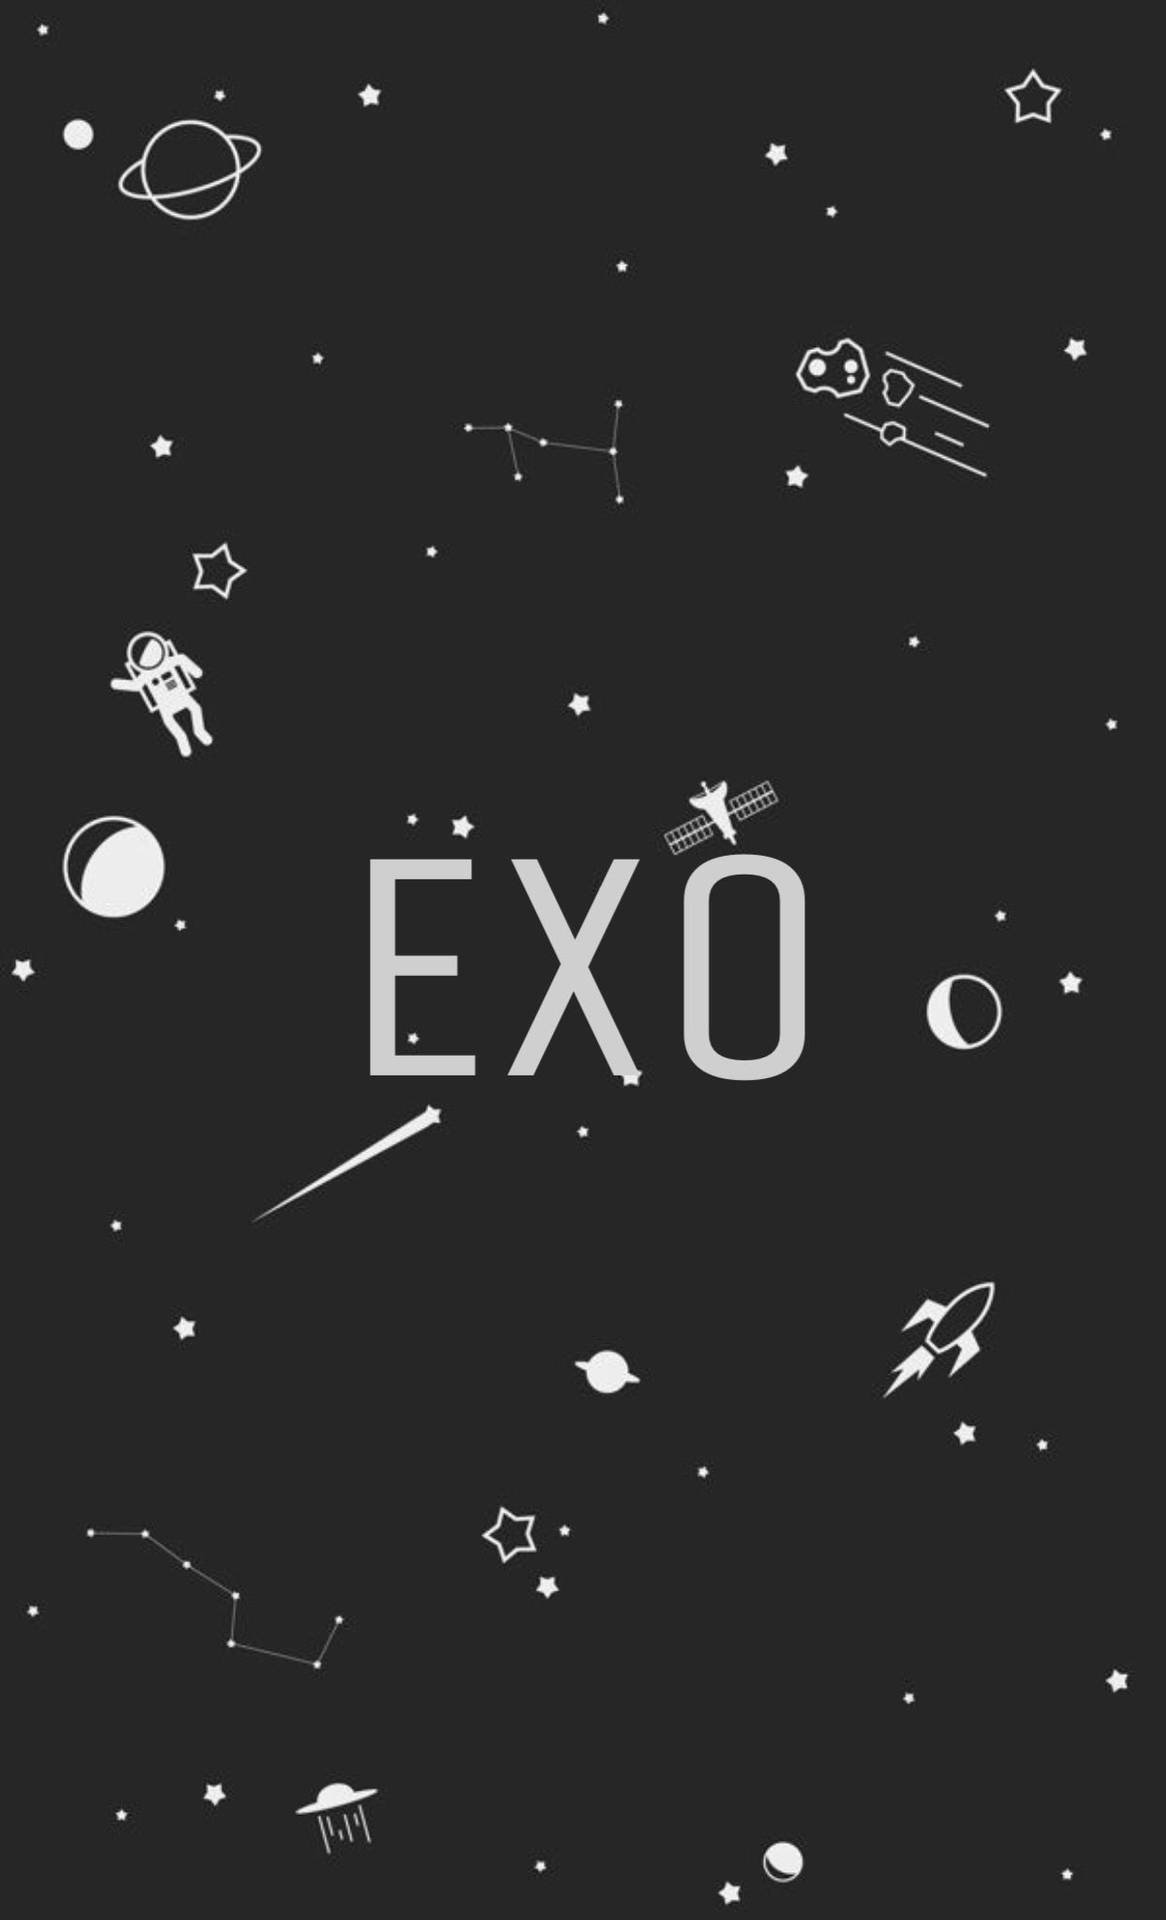 Exo Galaxy Fan Art